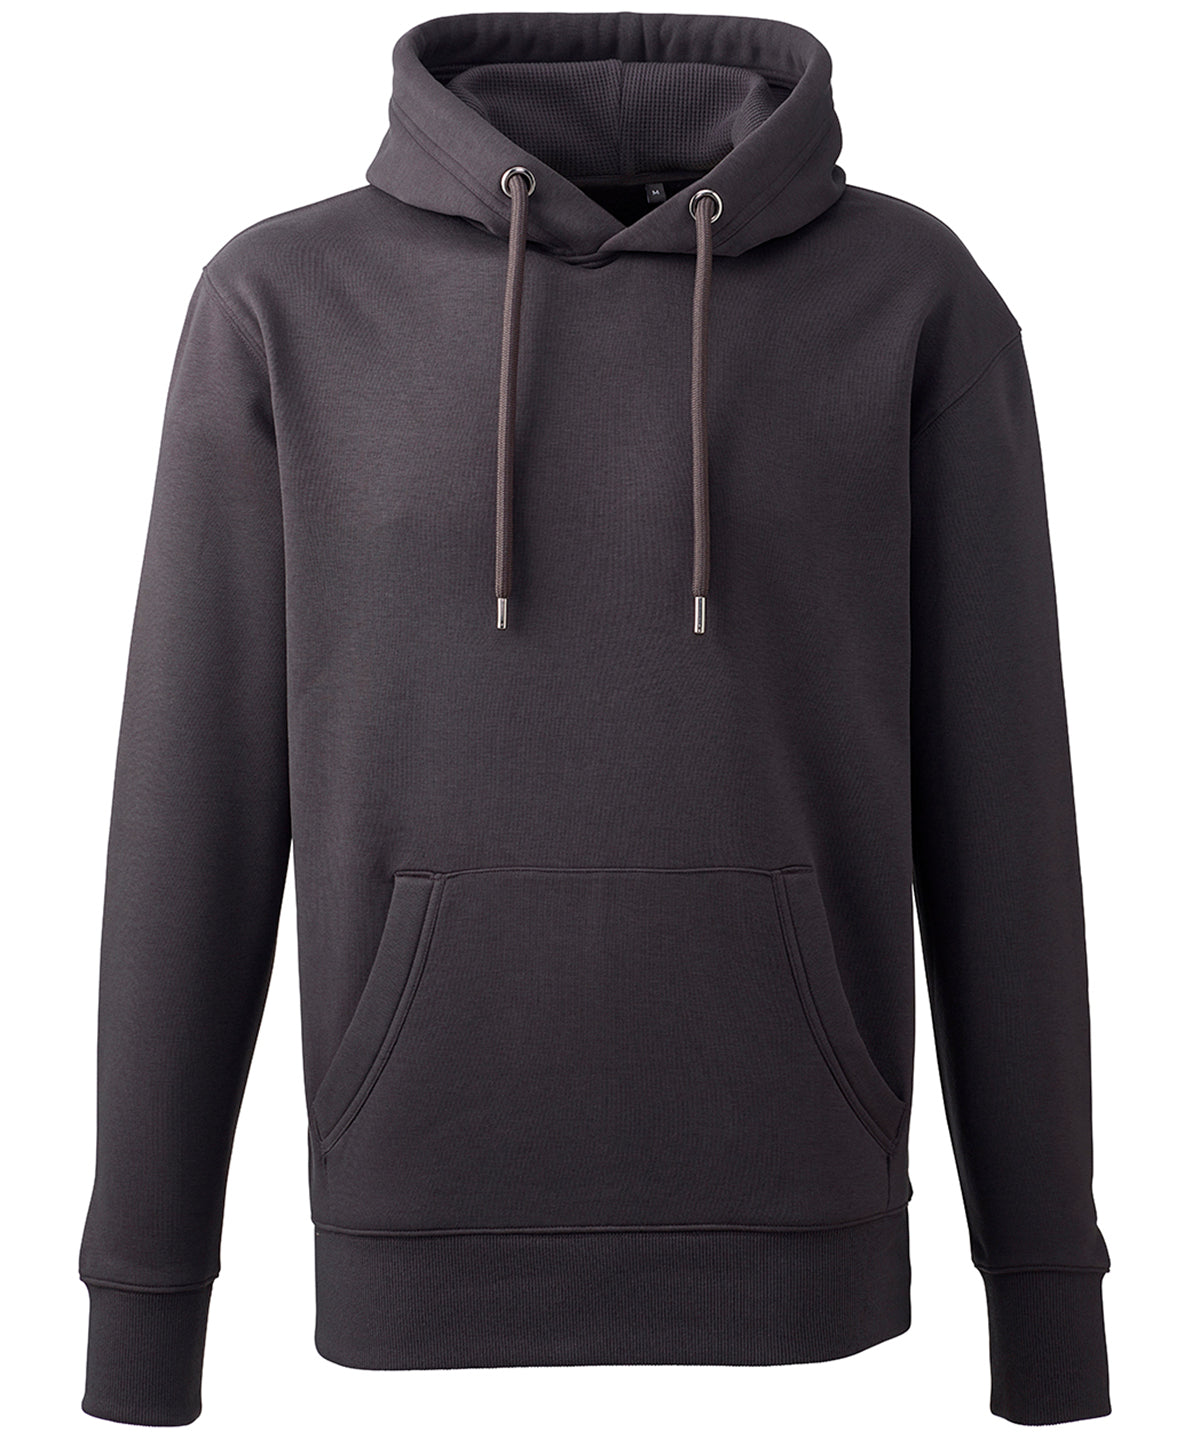 Personalised Hoodies - Light Grey Anthem Men's Anthem hoodie